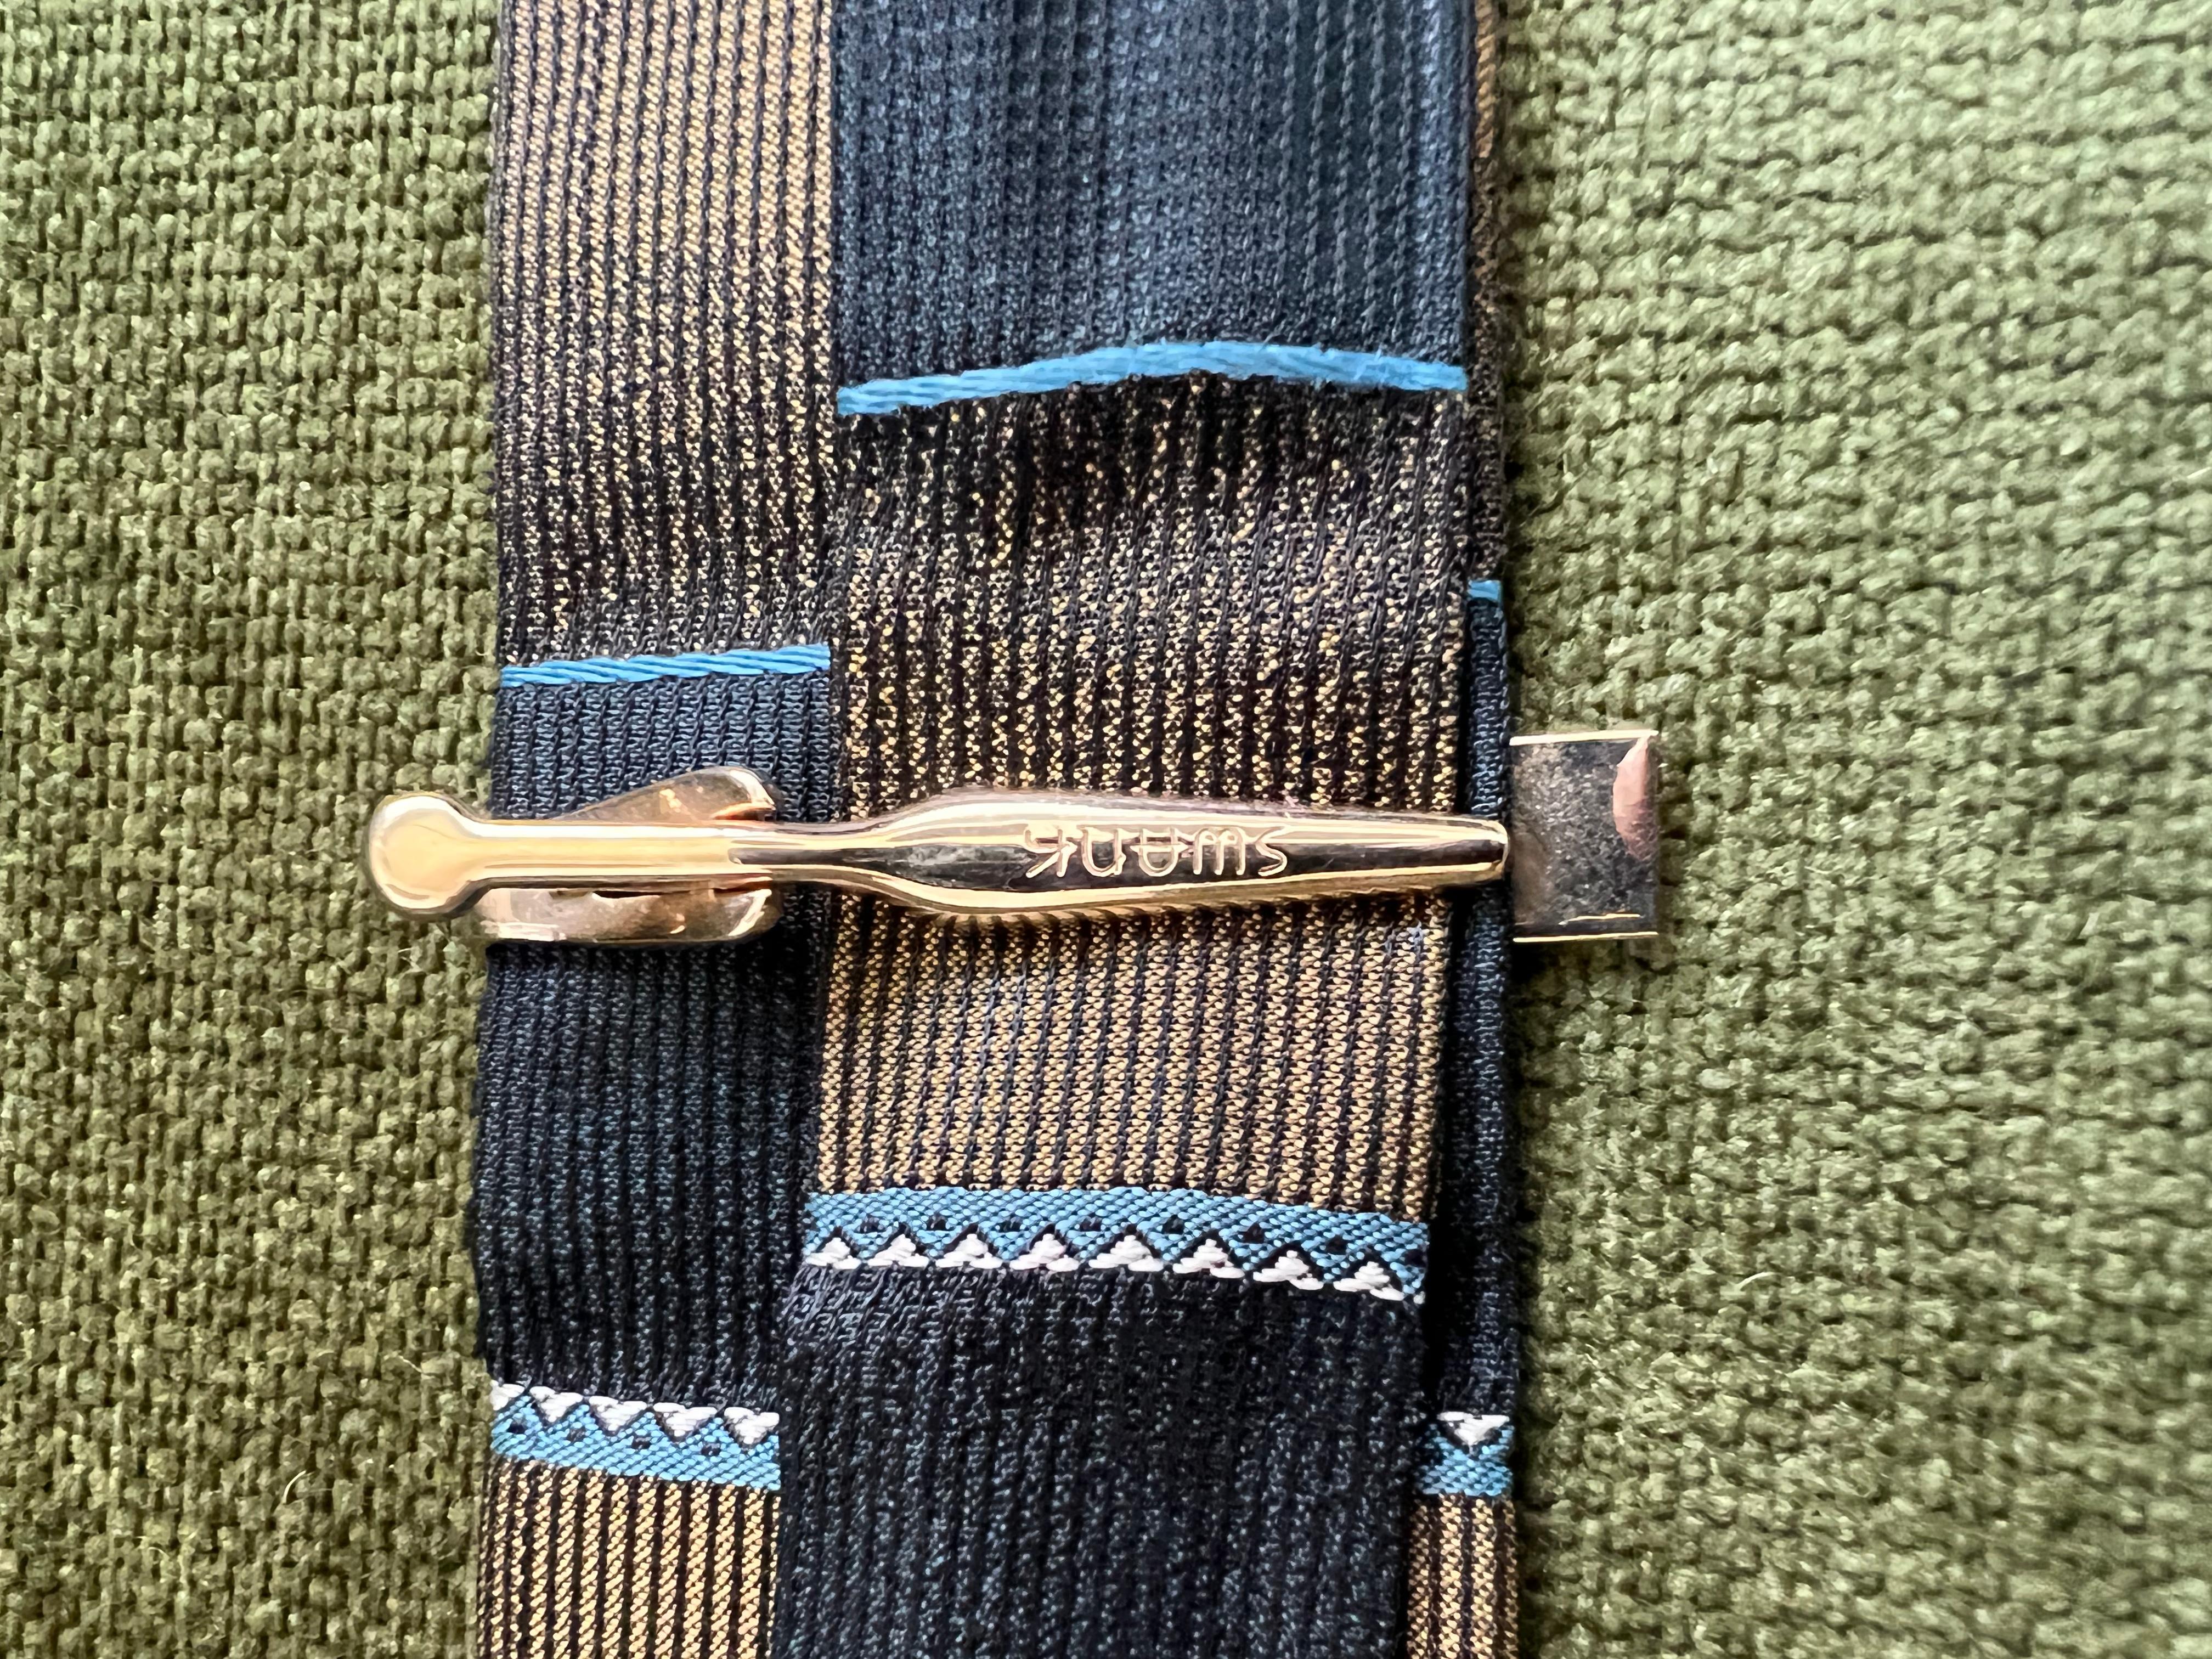 swank tie clip vintage